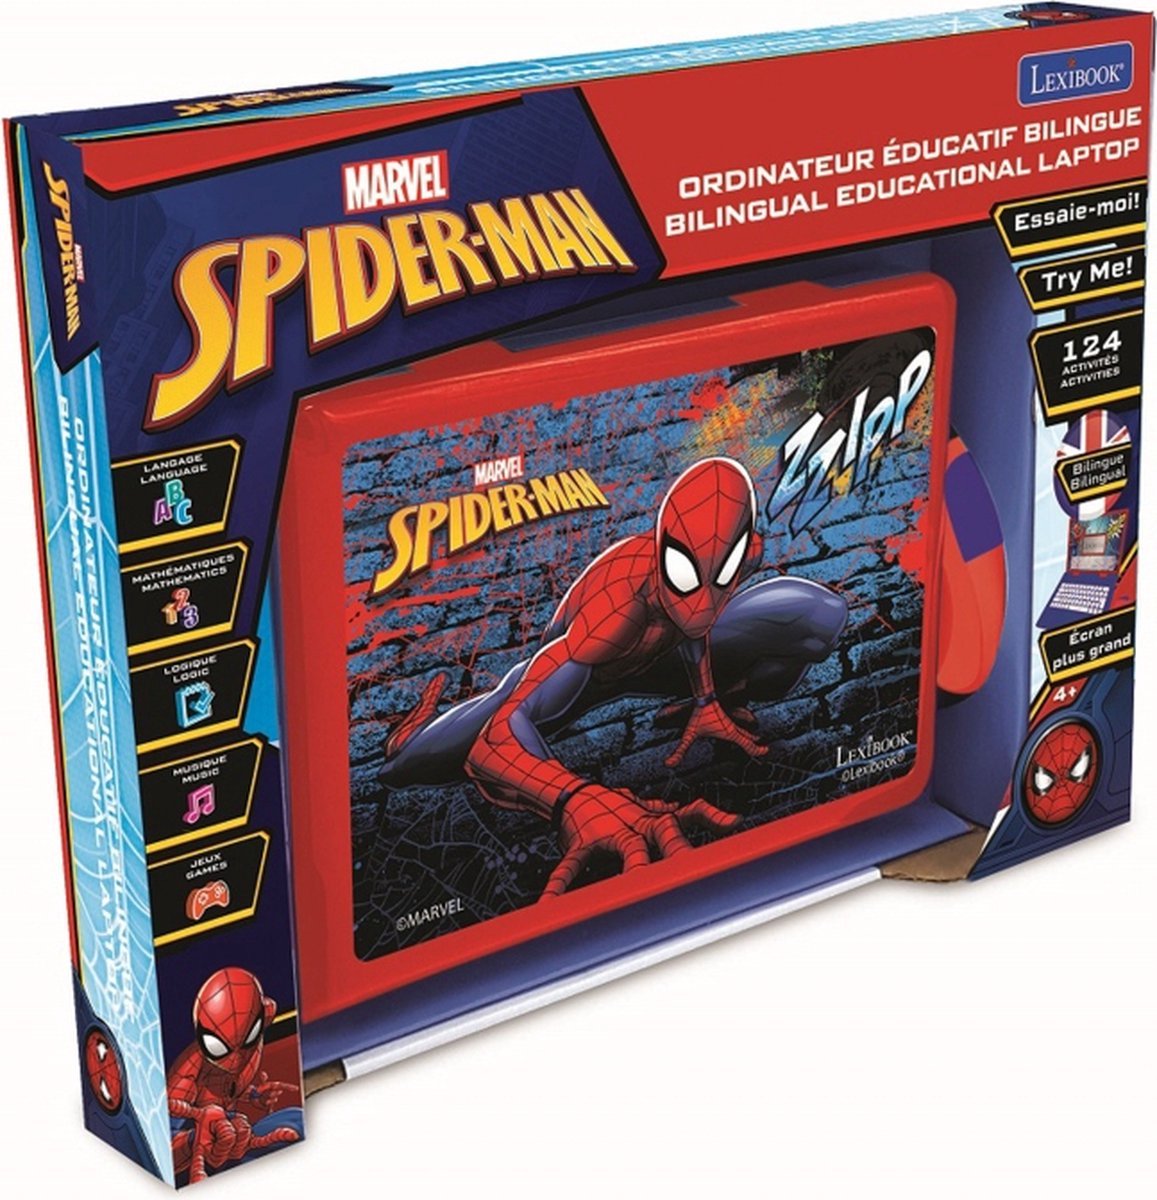 Spiderman - montre enfant interactive, jeux educatifs